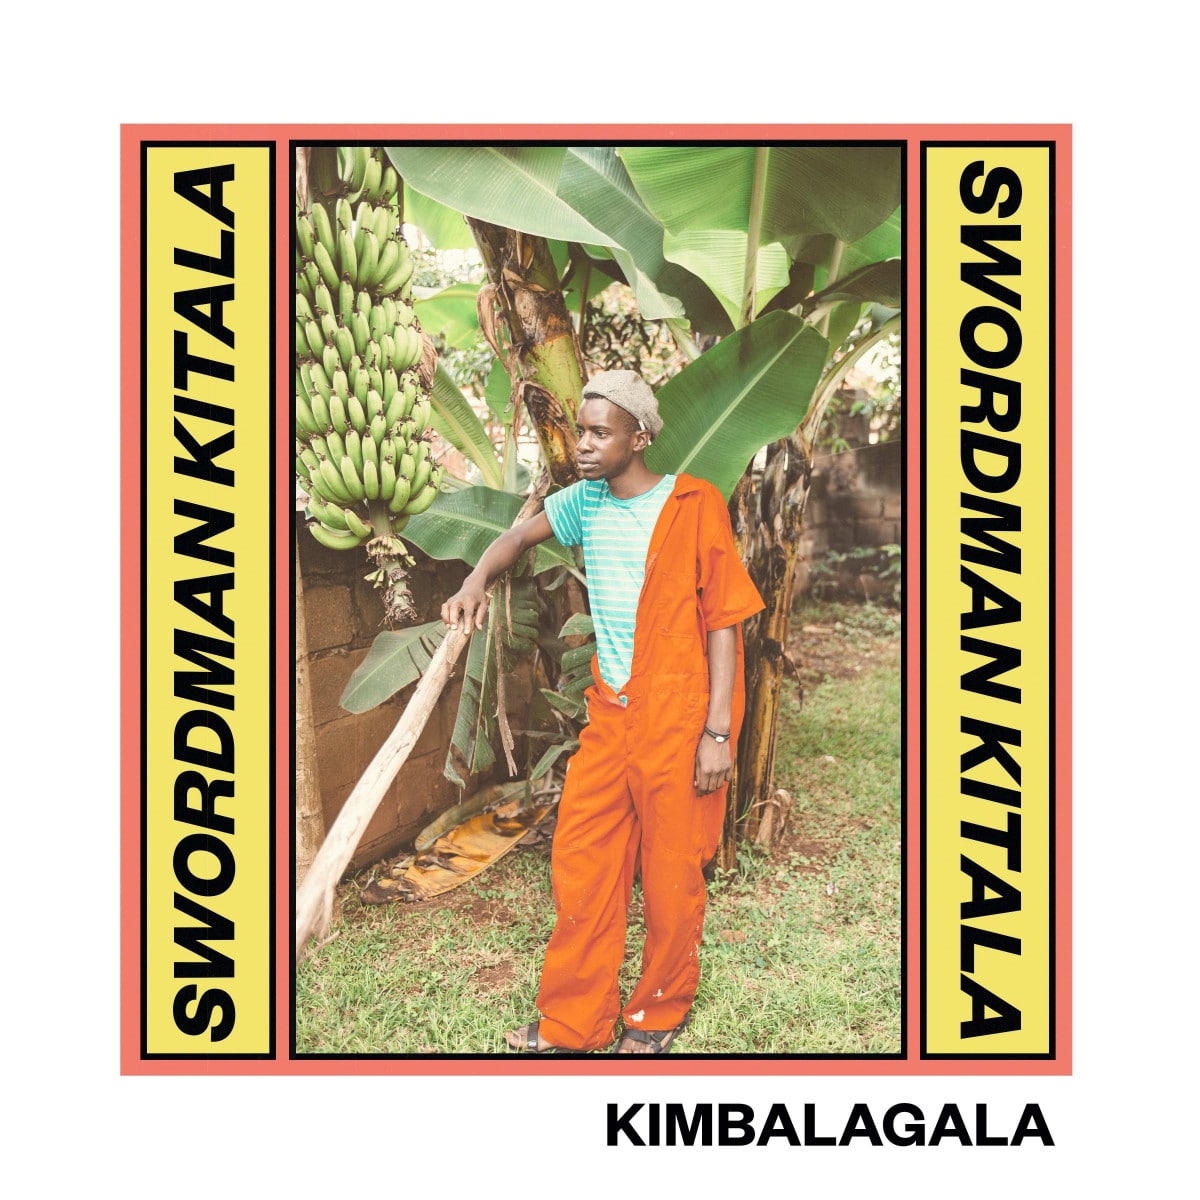 Swordman Kitala|K-Lone|OFlynn|Tom Blip|Ekhe|pq - Kimbalagala - BLIP009 - BLIP DISCS